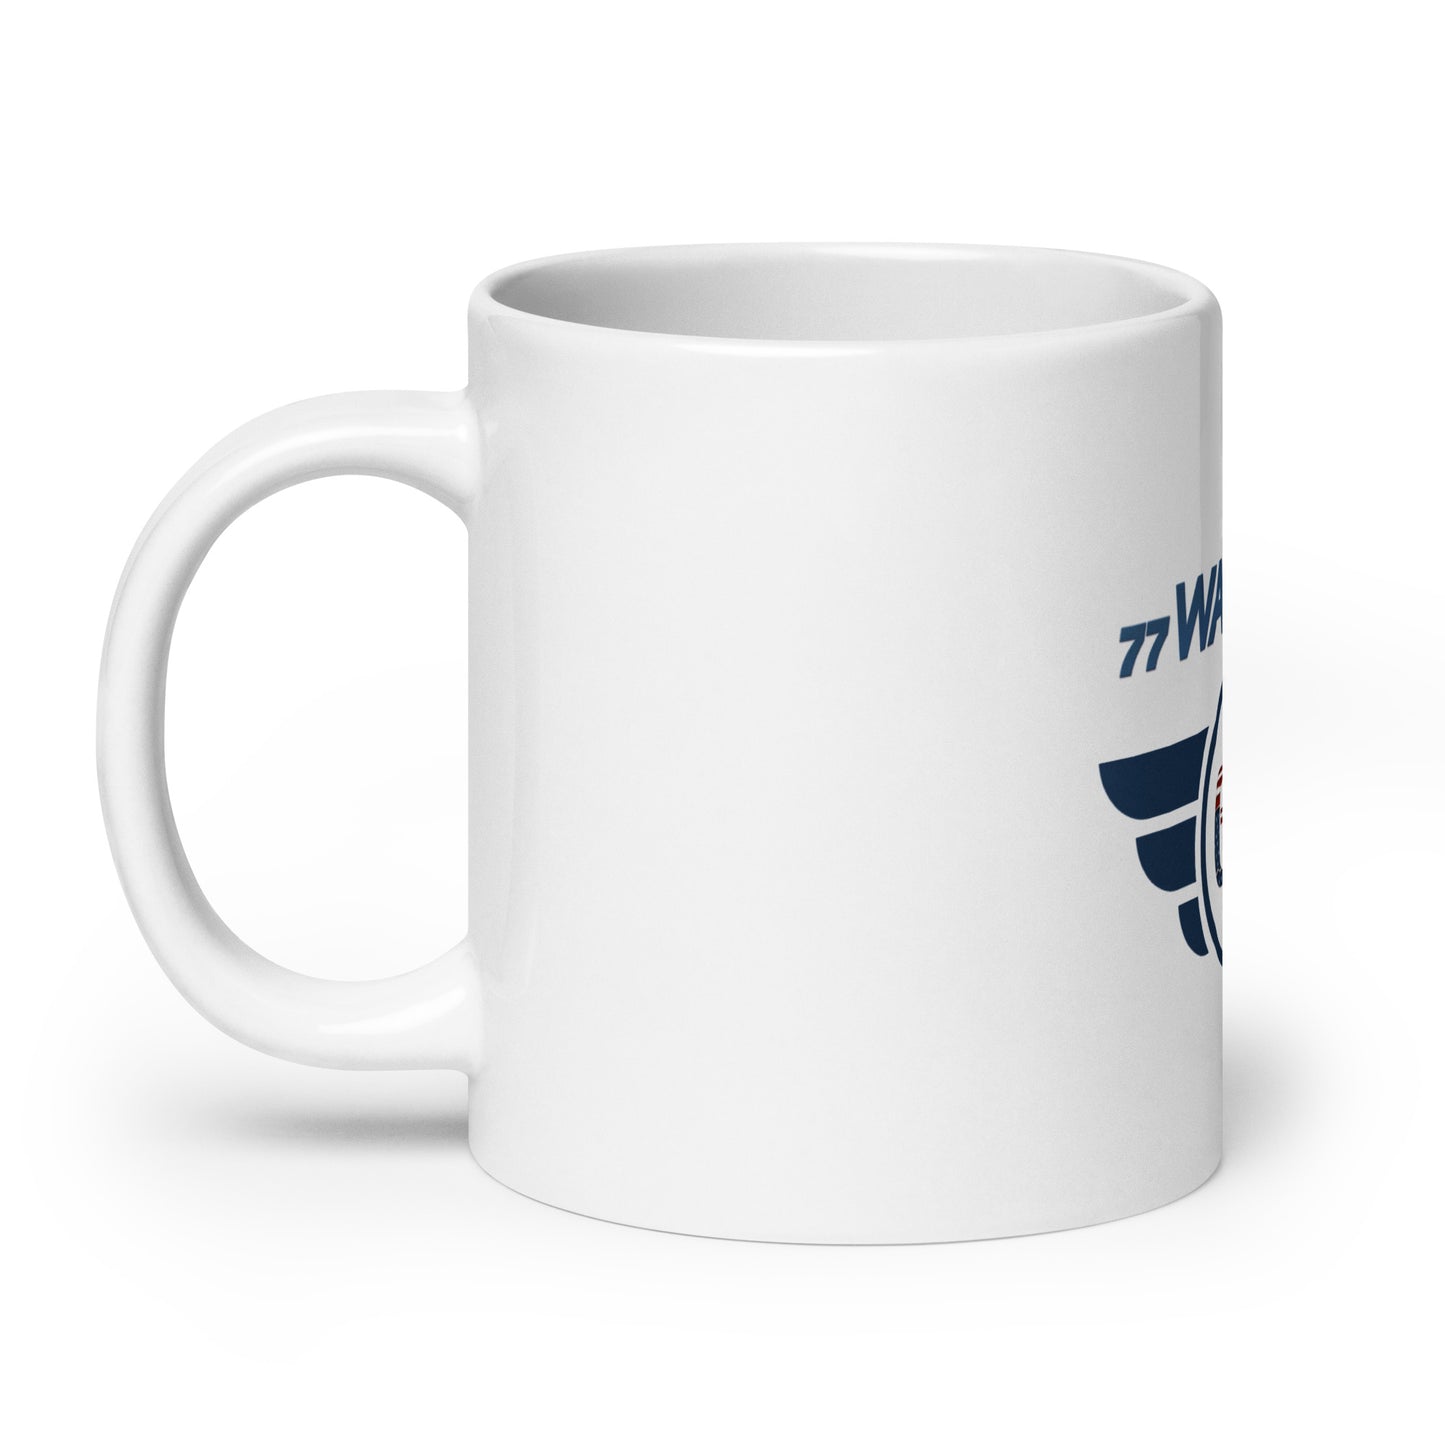 GK White glossy mug